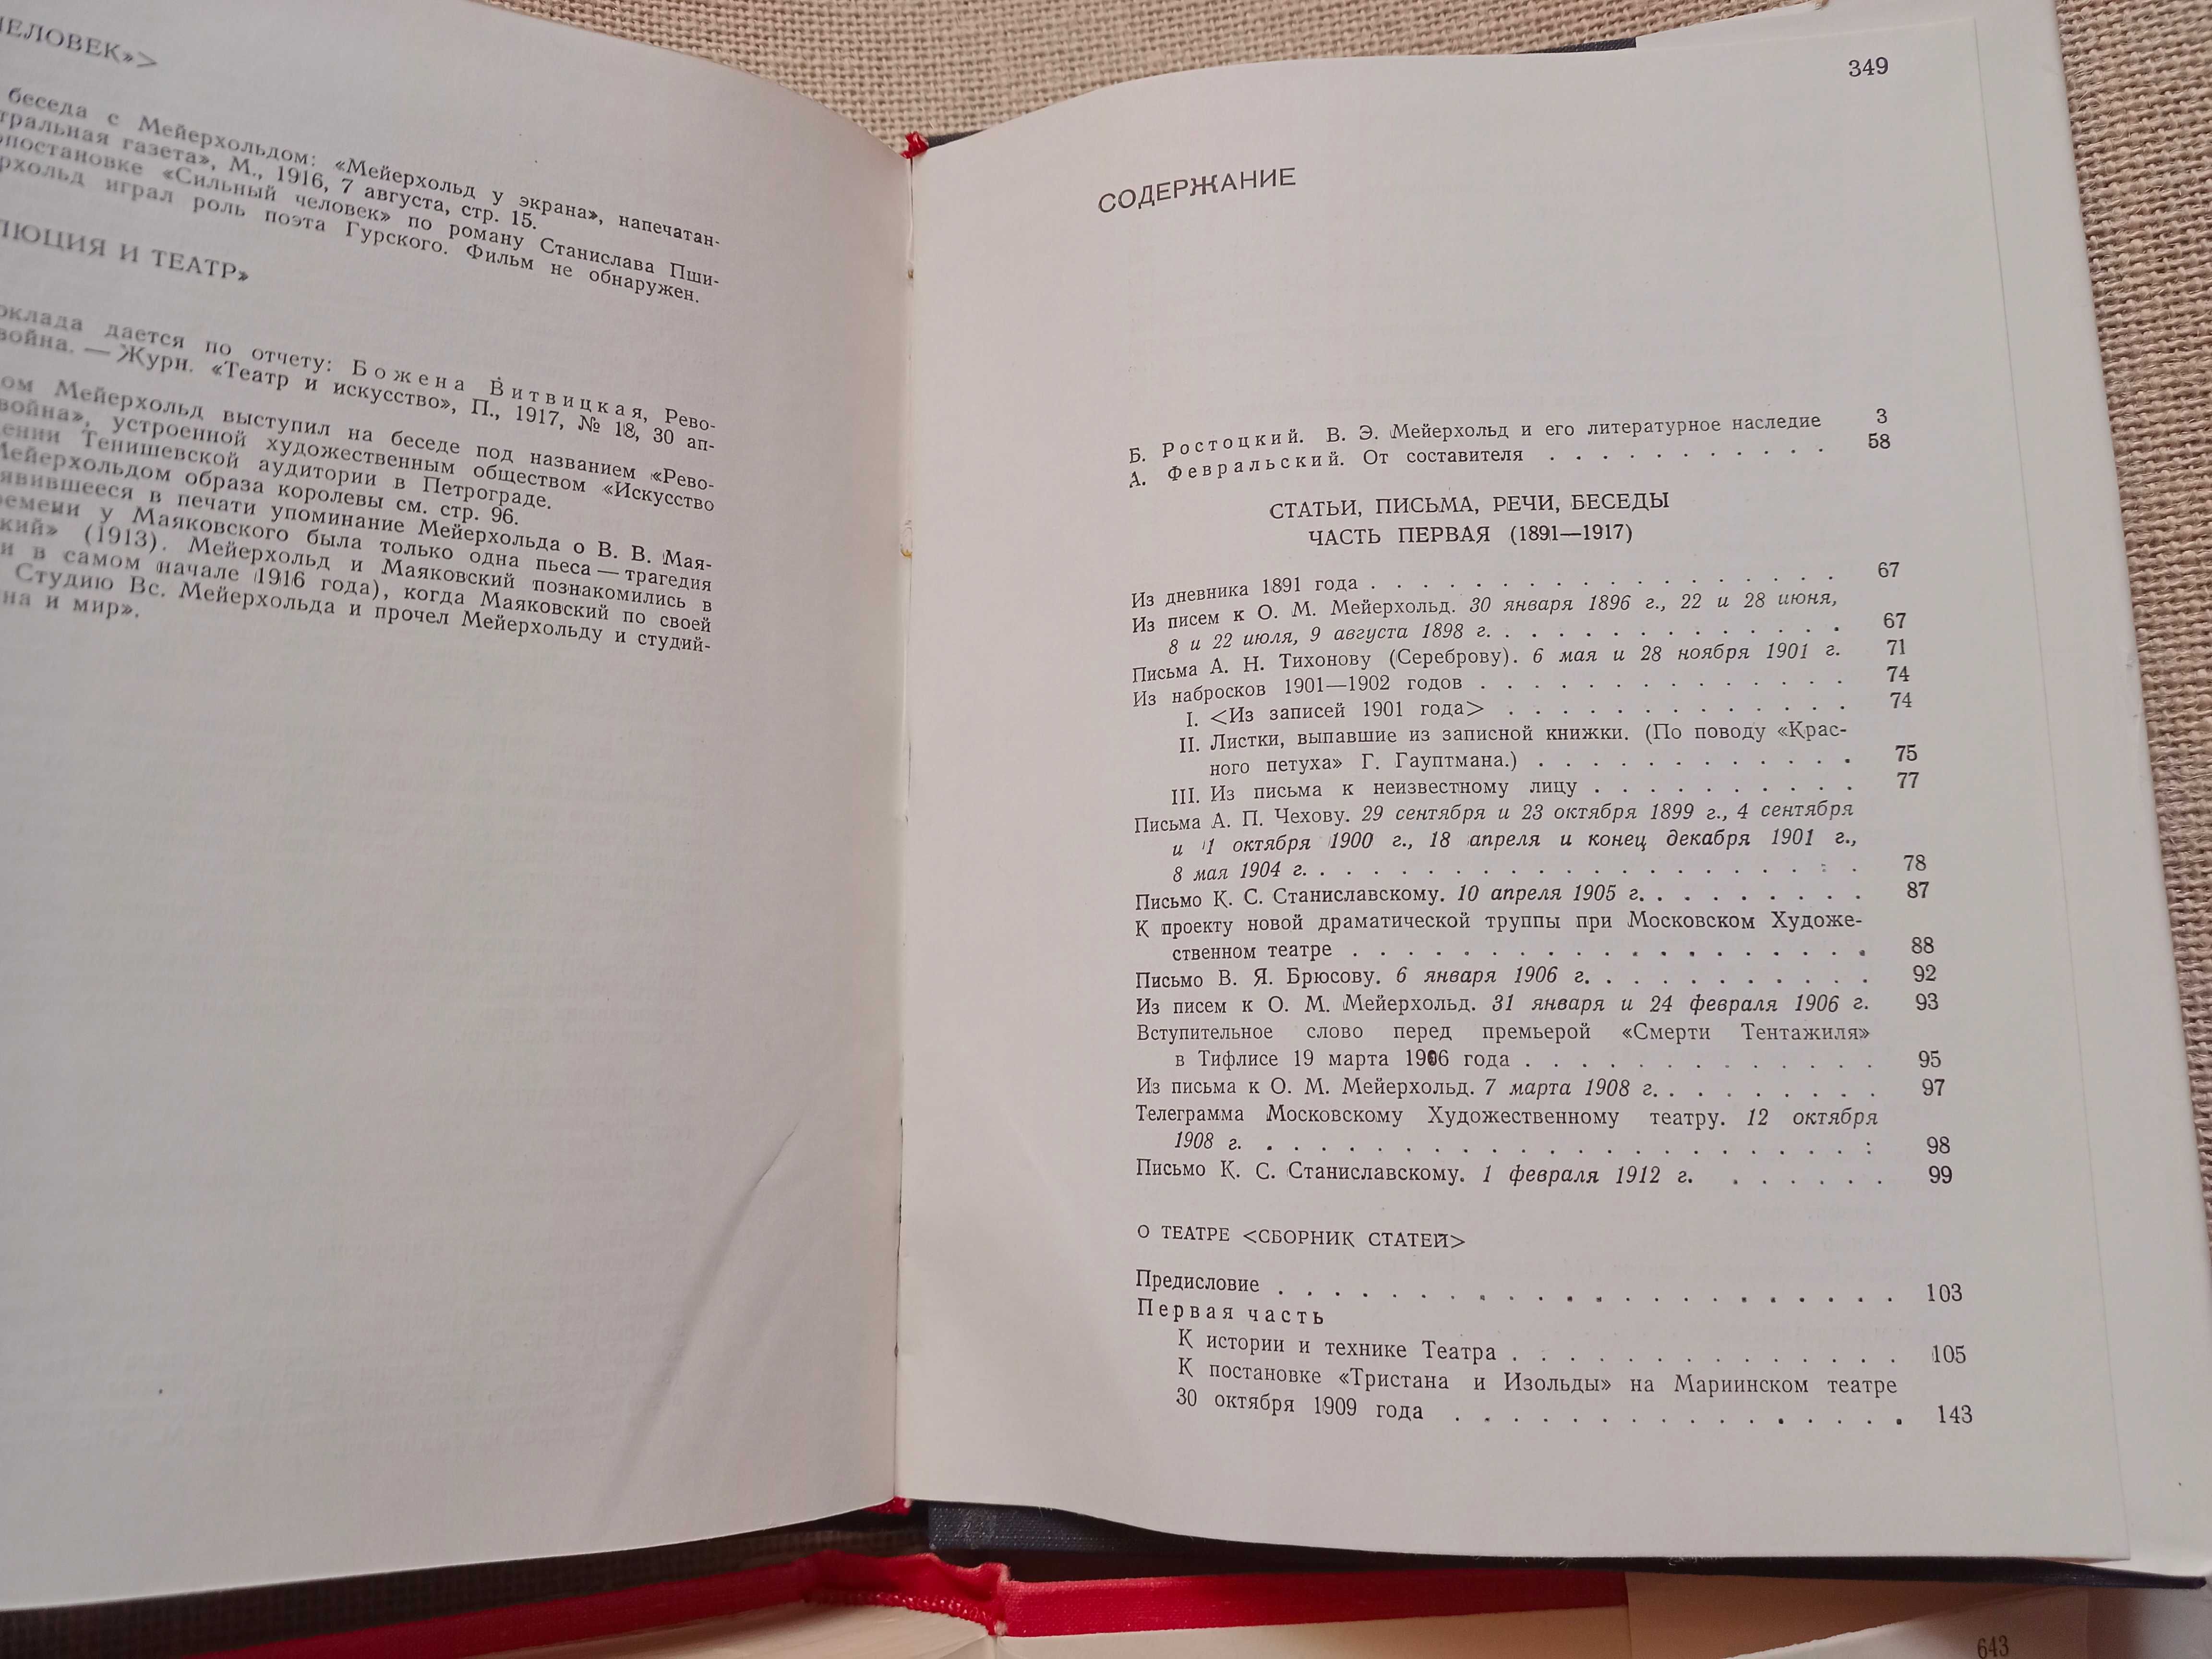 МЕЙЕРХОЛЬД -2 тома статьи, письма, речи беседы 1968 -театр,театральный